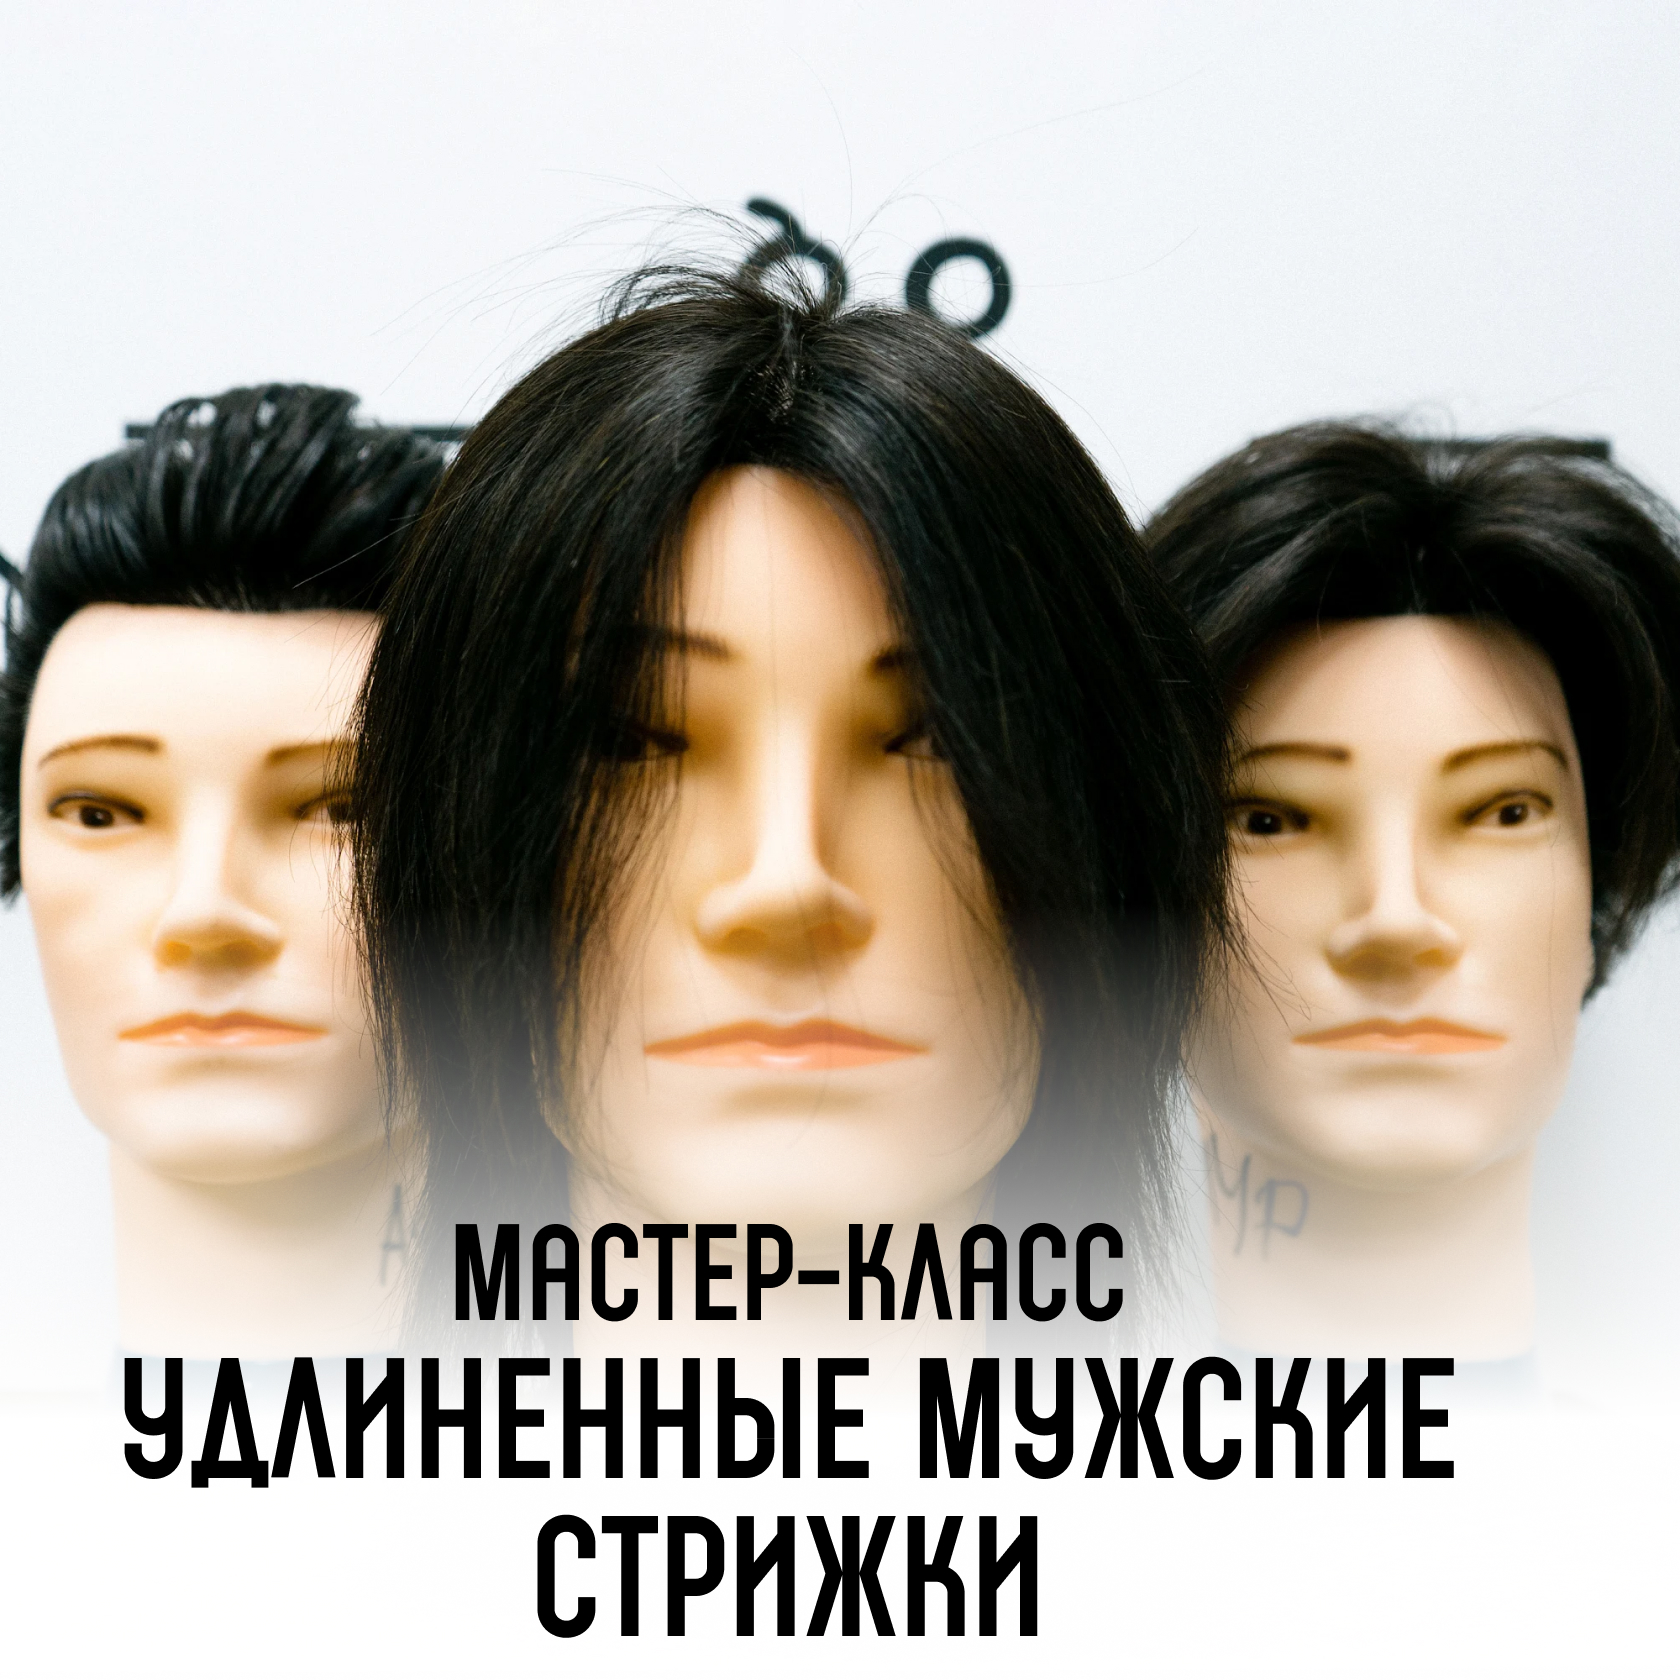 Portos - сеть мужских парикмахерских в Казани